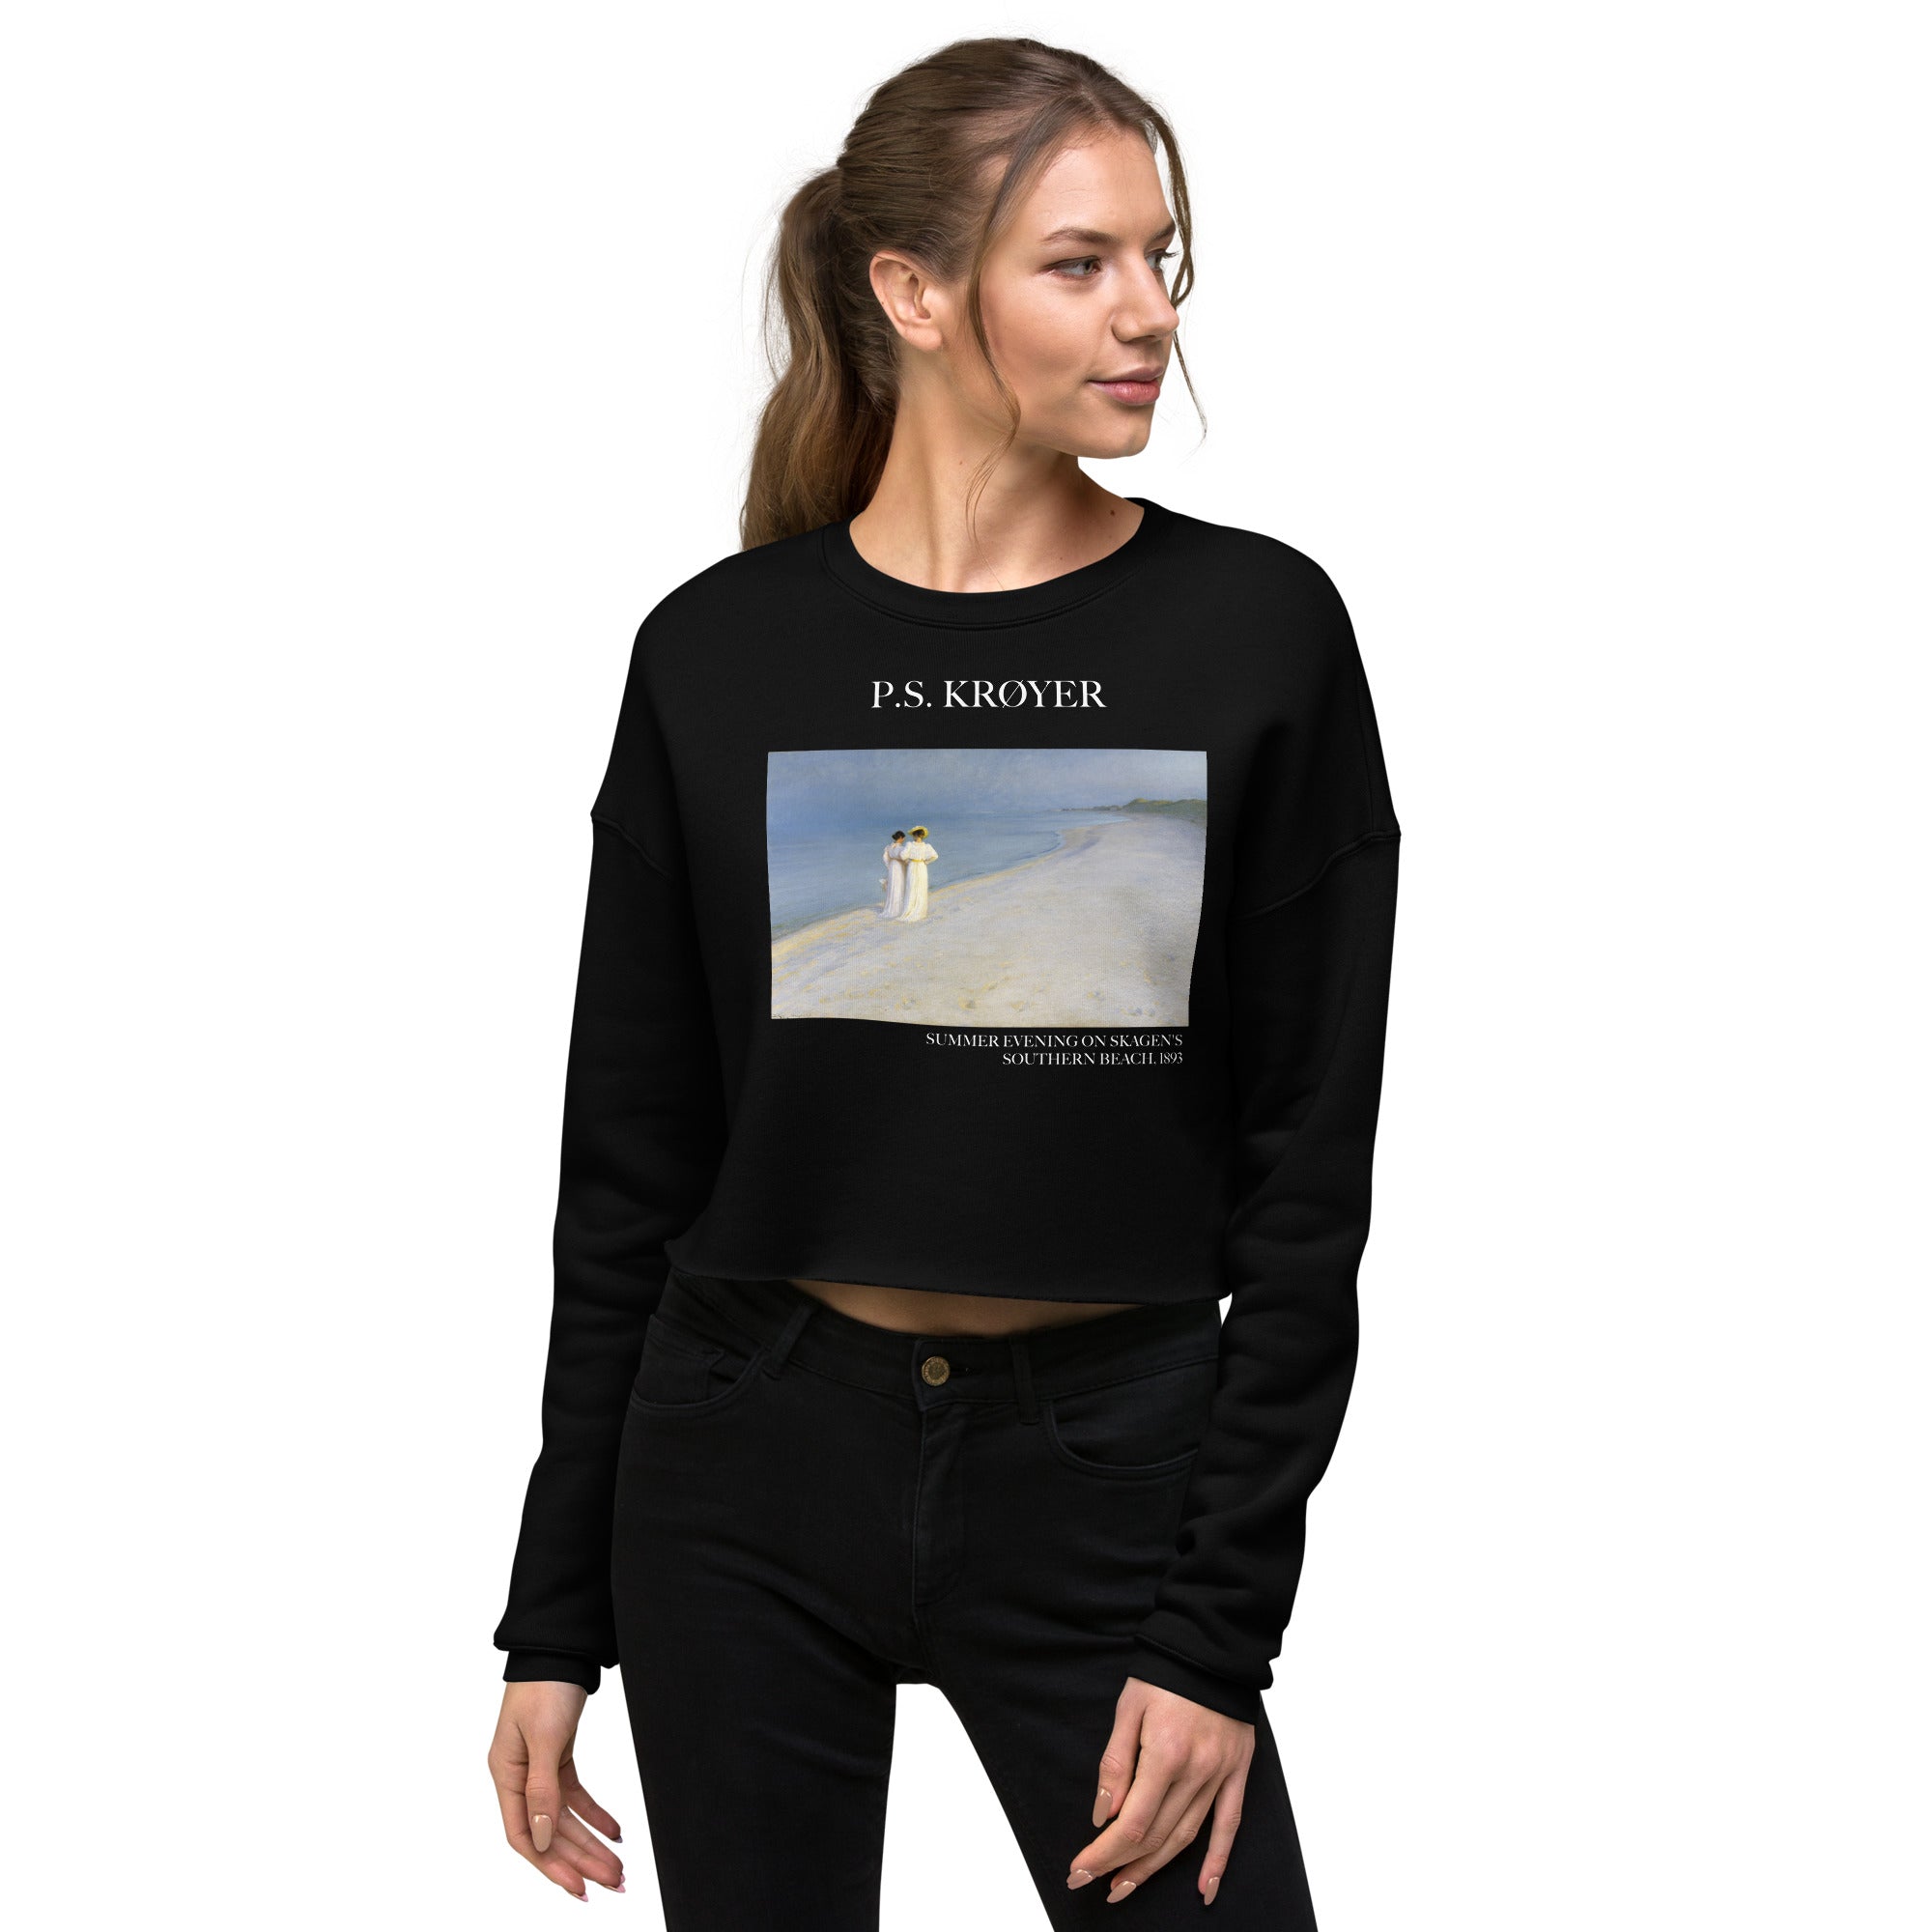 PS Krøyer „Sommerabend am Südstrand von Skagen“ – Berühmtes Gemälde – Kurzes Sweatshirt | Premium Art – Kurzes Sweatshirt